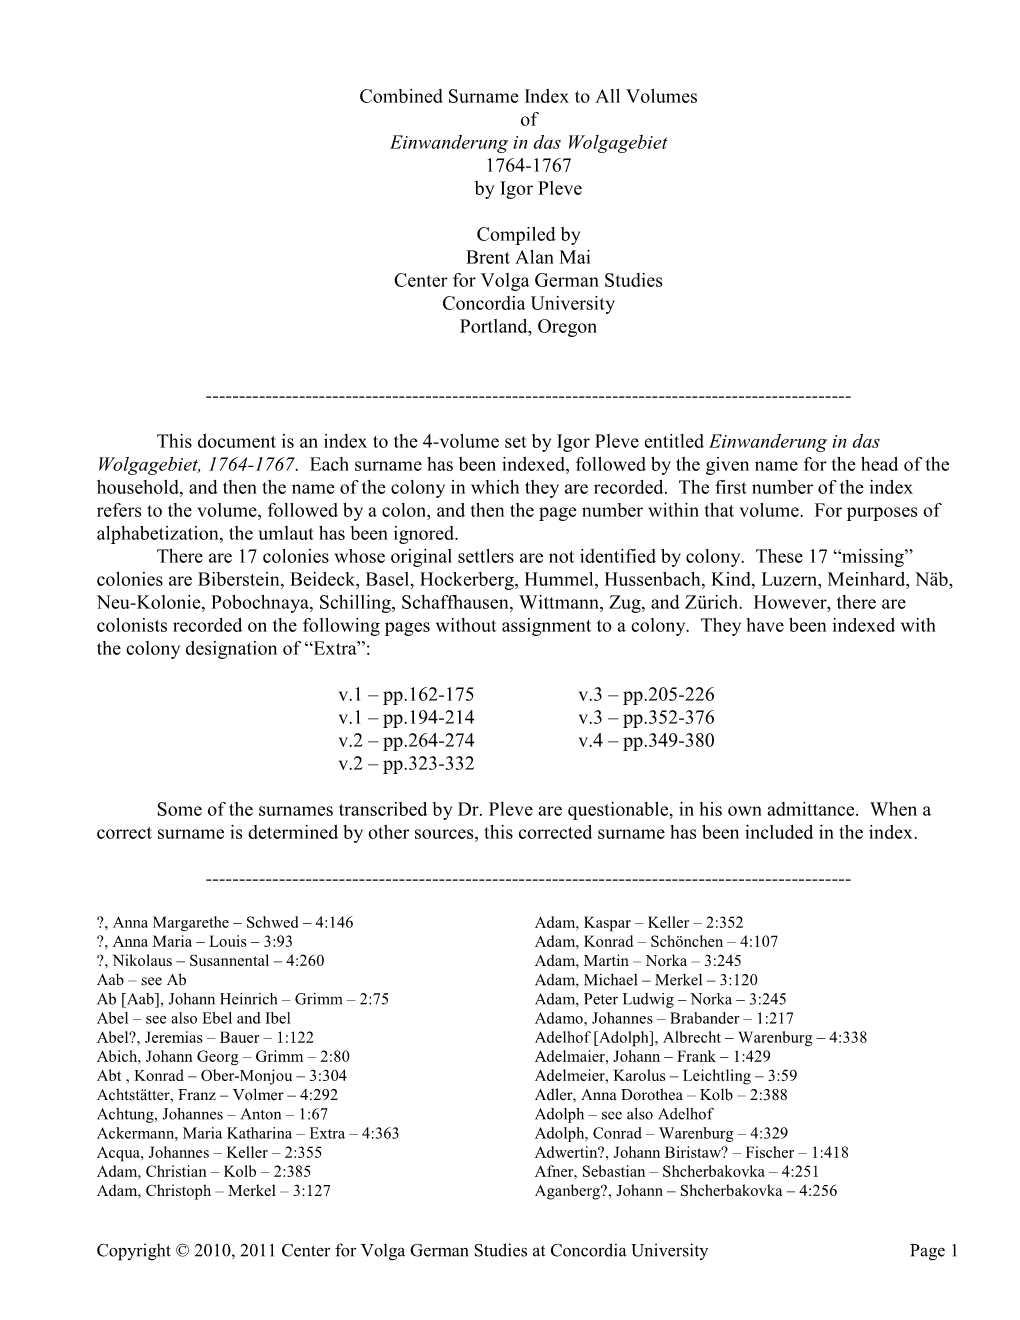 Combined Surname Index to All Volumes of Einwanderung in Das Wolgagebiet 1764-1767 by Igor Pleve